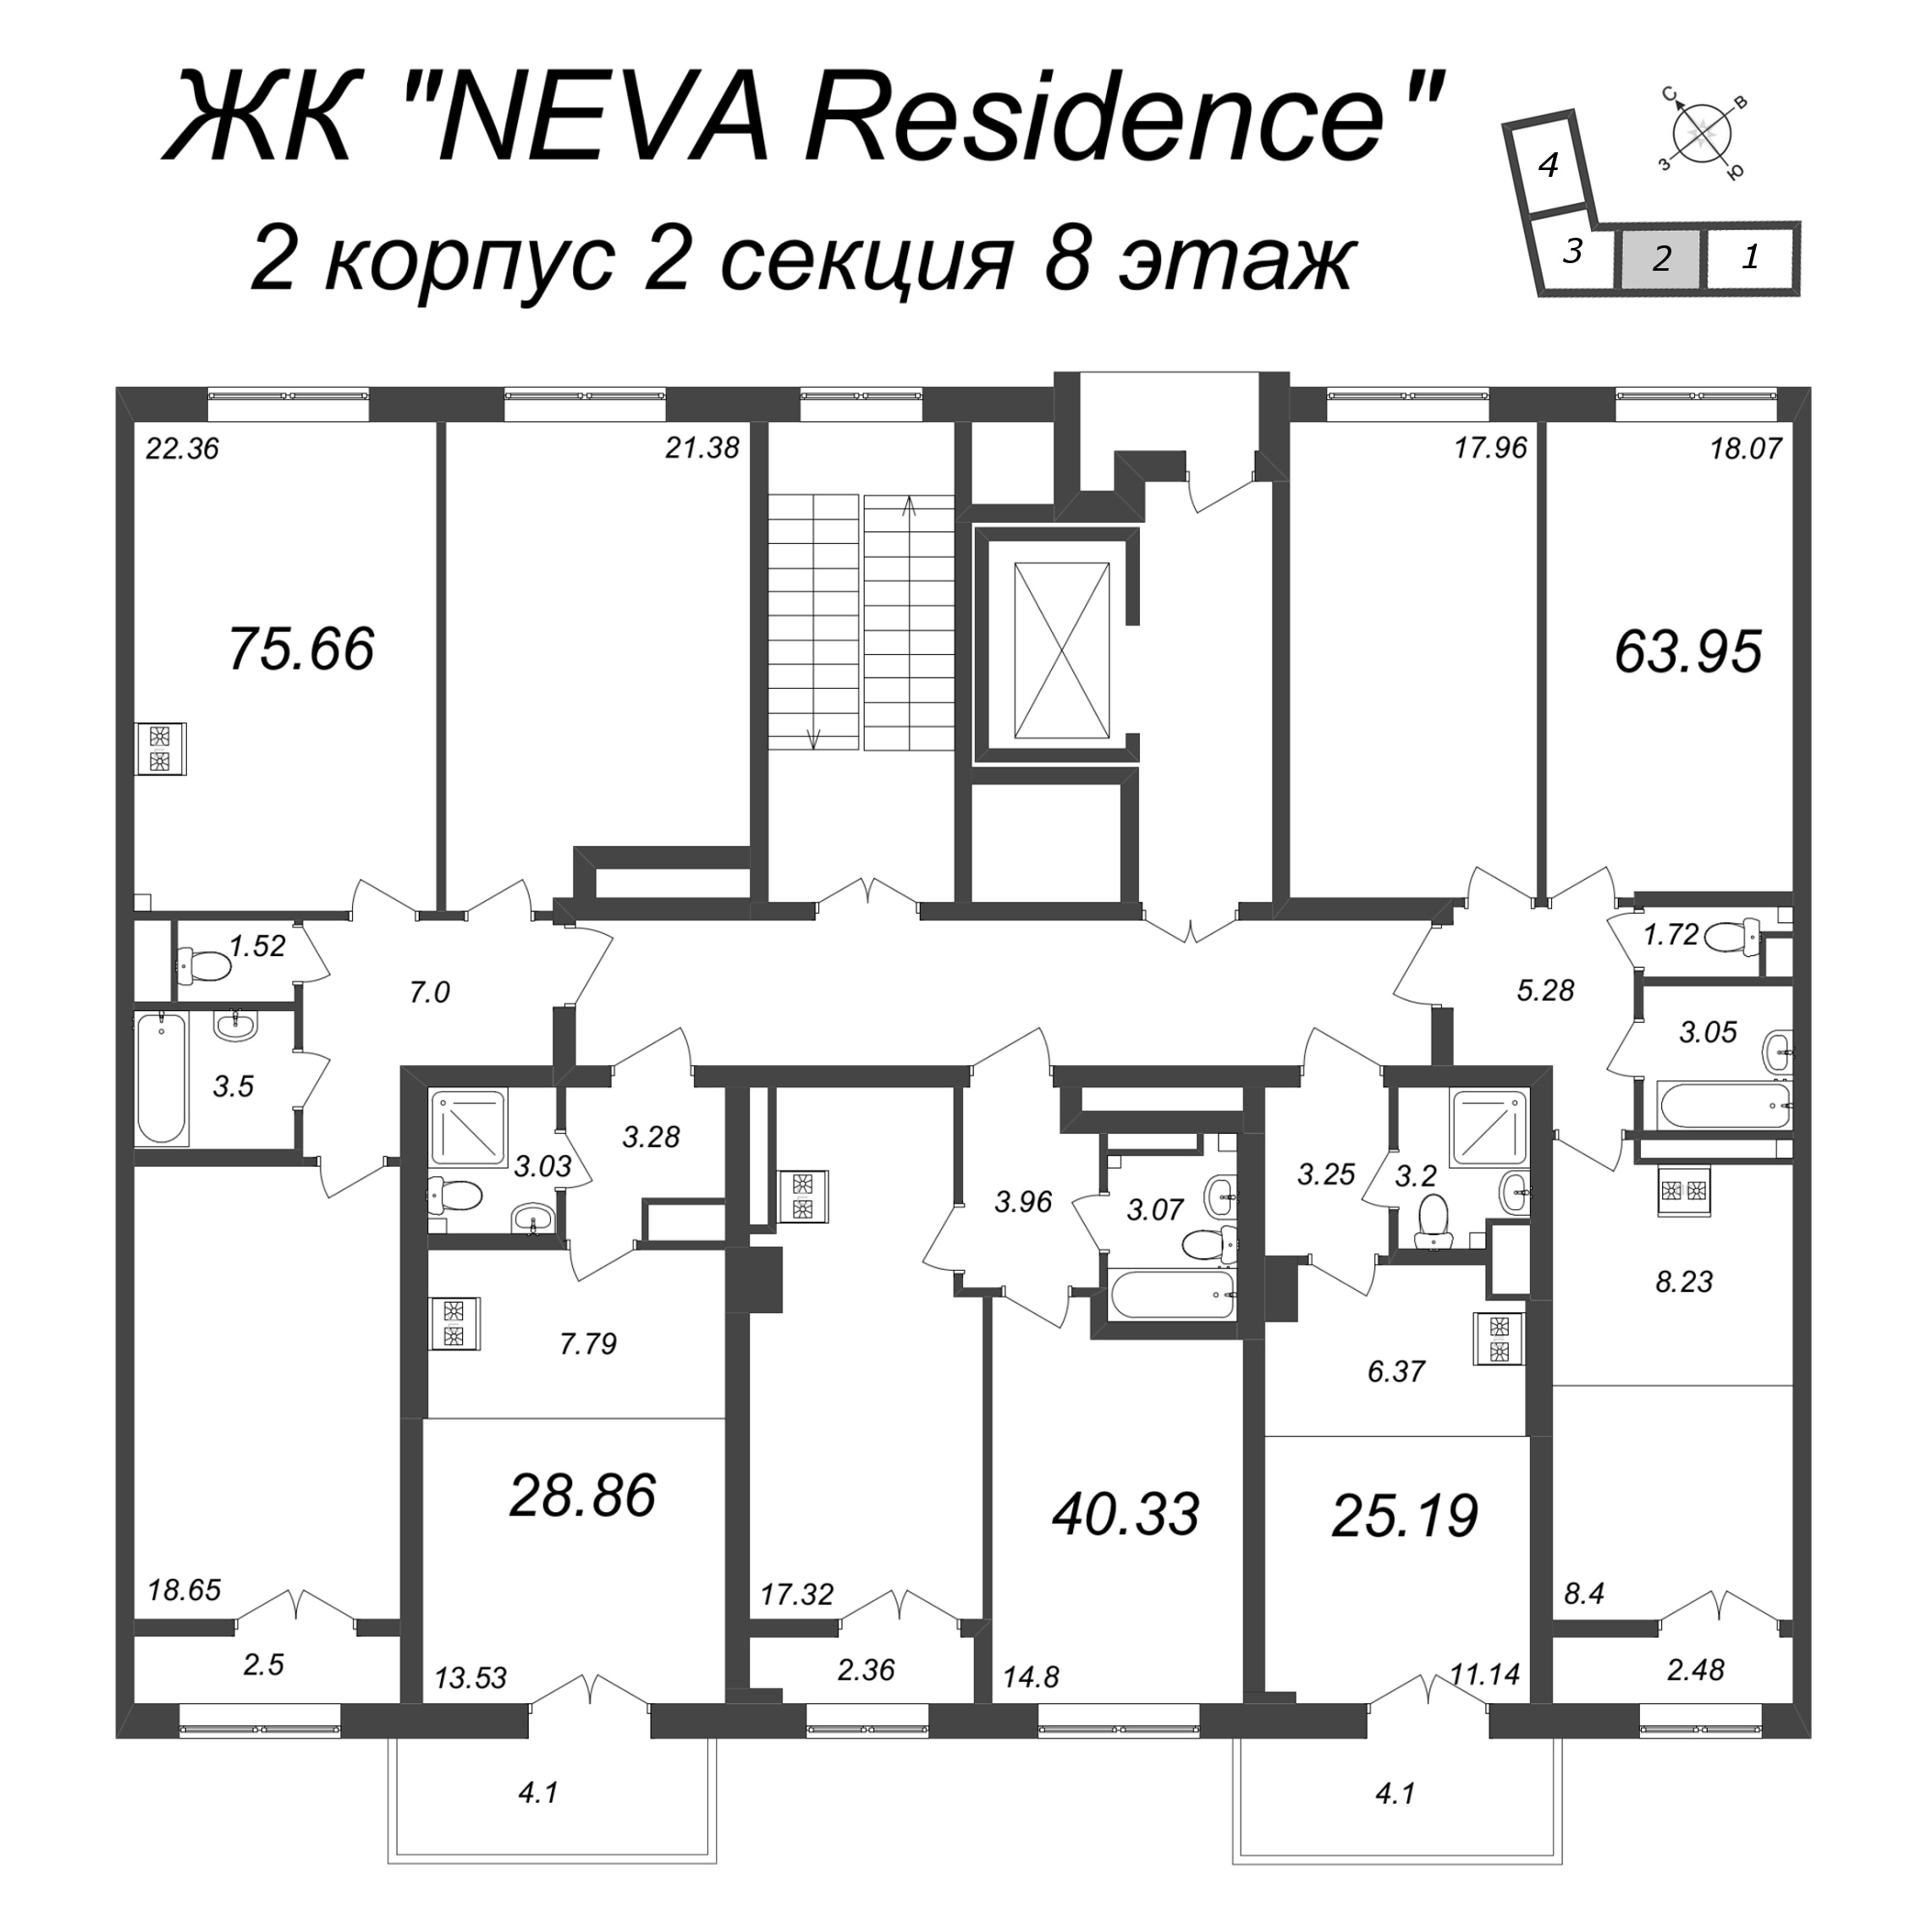 Квартира-студия, 25.19 м² в ЖК "Neva Residence" - планировка этажа